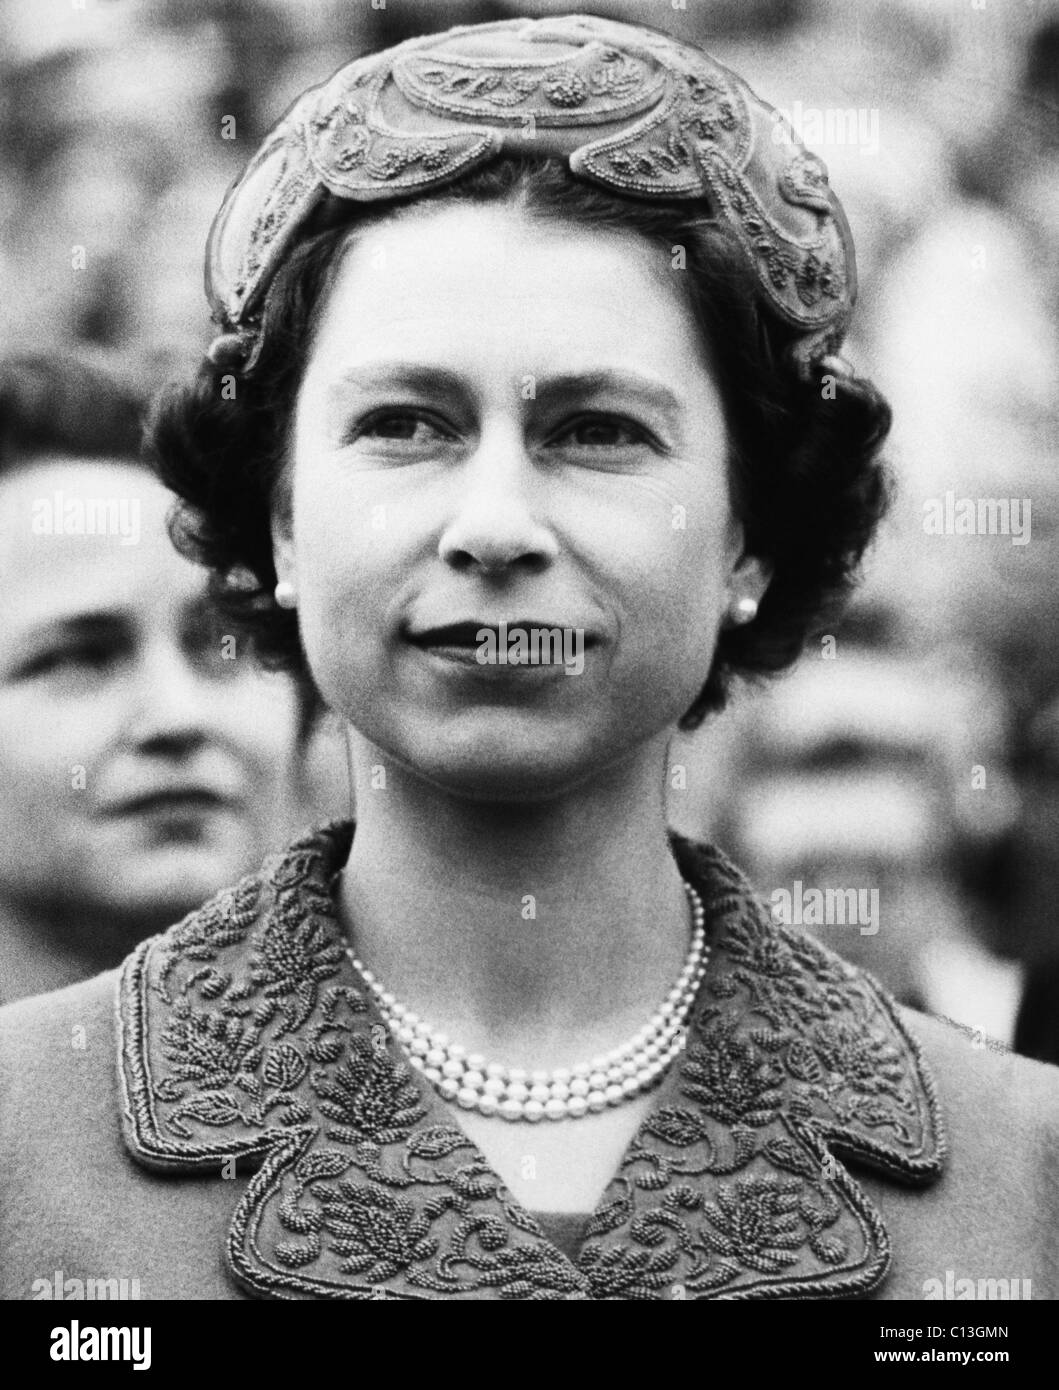 La Couronne britannique. La reine Elizabeth II d'Angleterre, vers la fin des années 1950. Banque D'Images